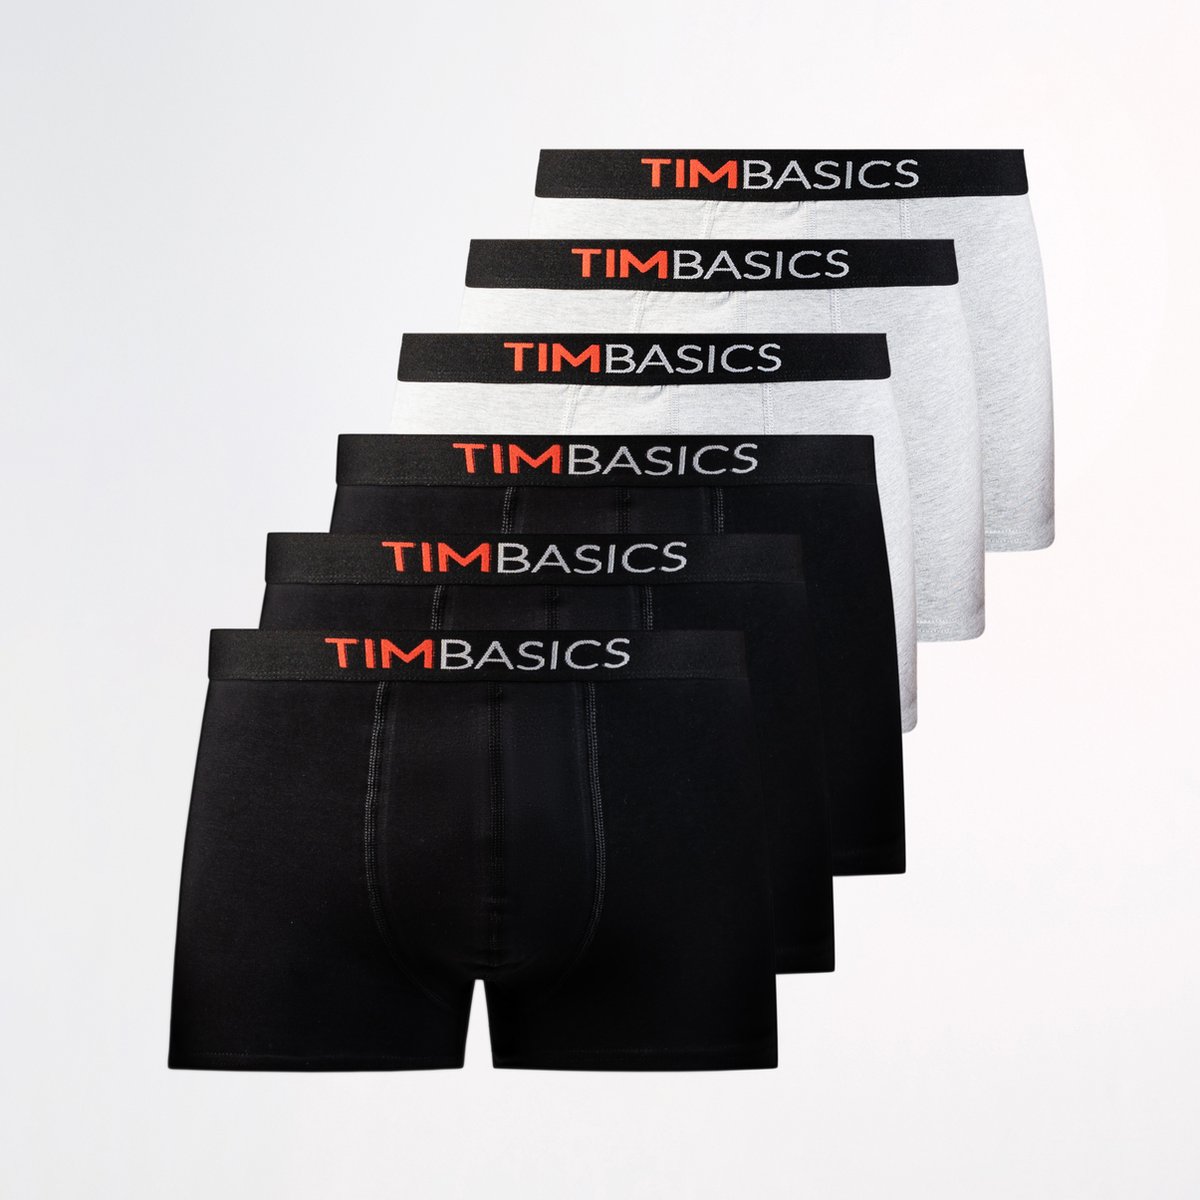 TimBasics - Heren boxershorts 6 pack - Zwart & Grijs – Maat XXL - Heren ondergoed